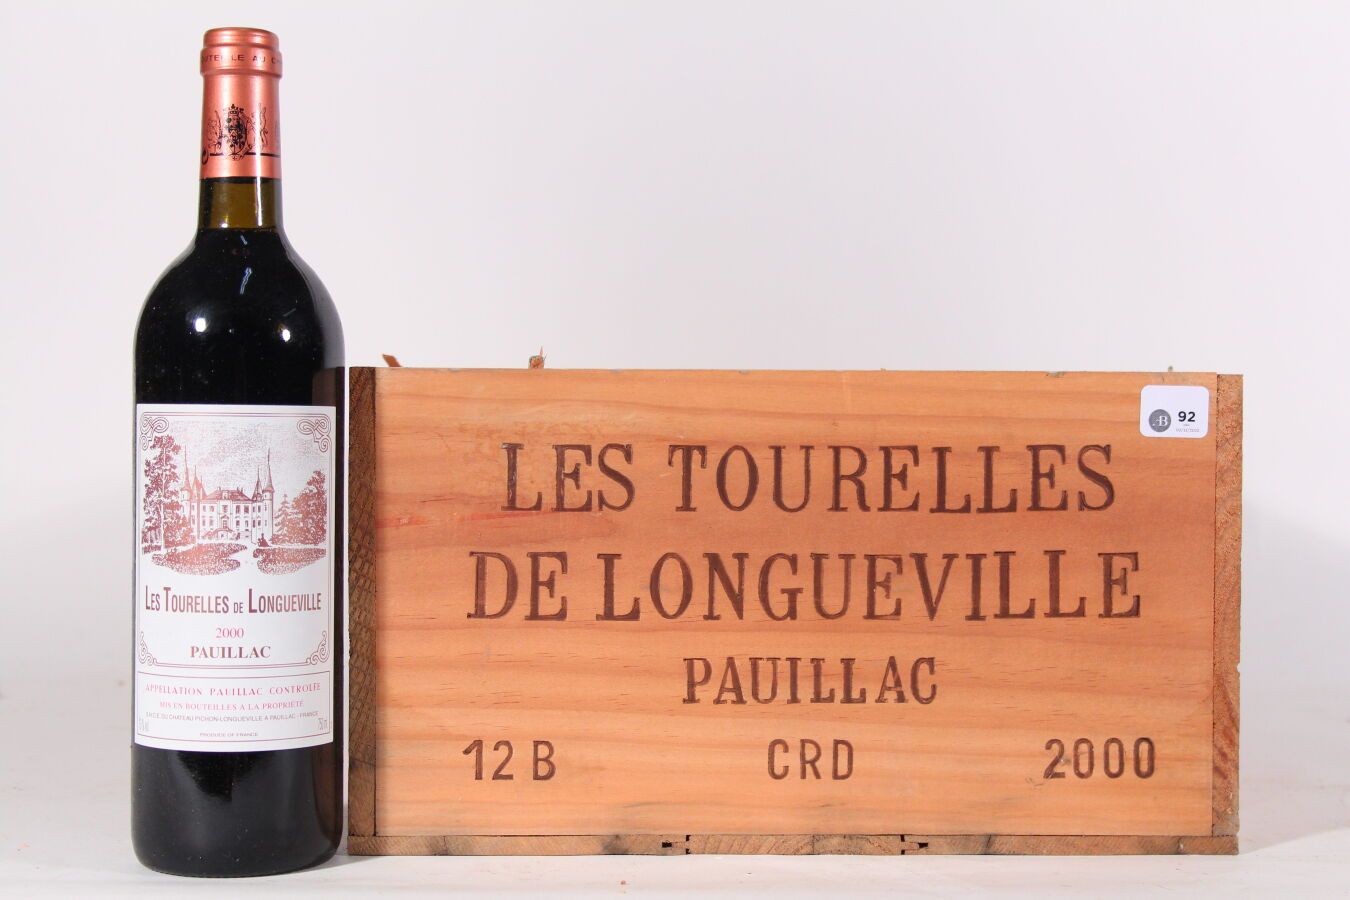 Null 2000 - Les Tourelles de Longueville
Pauillac Rojo - 12 blles CBO